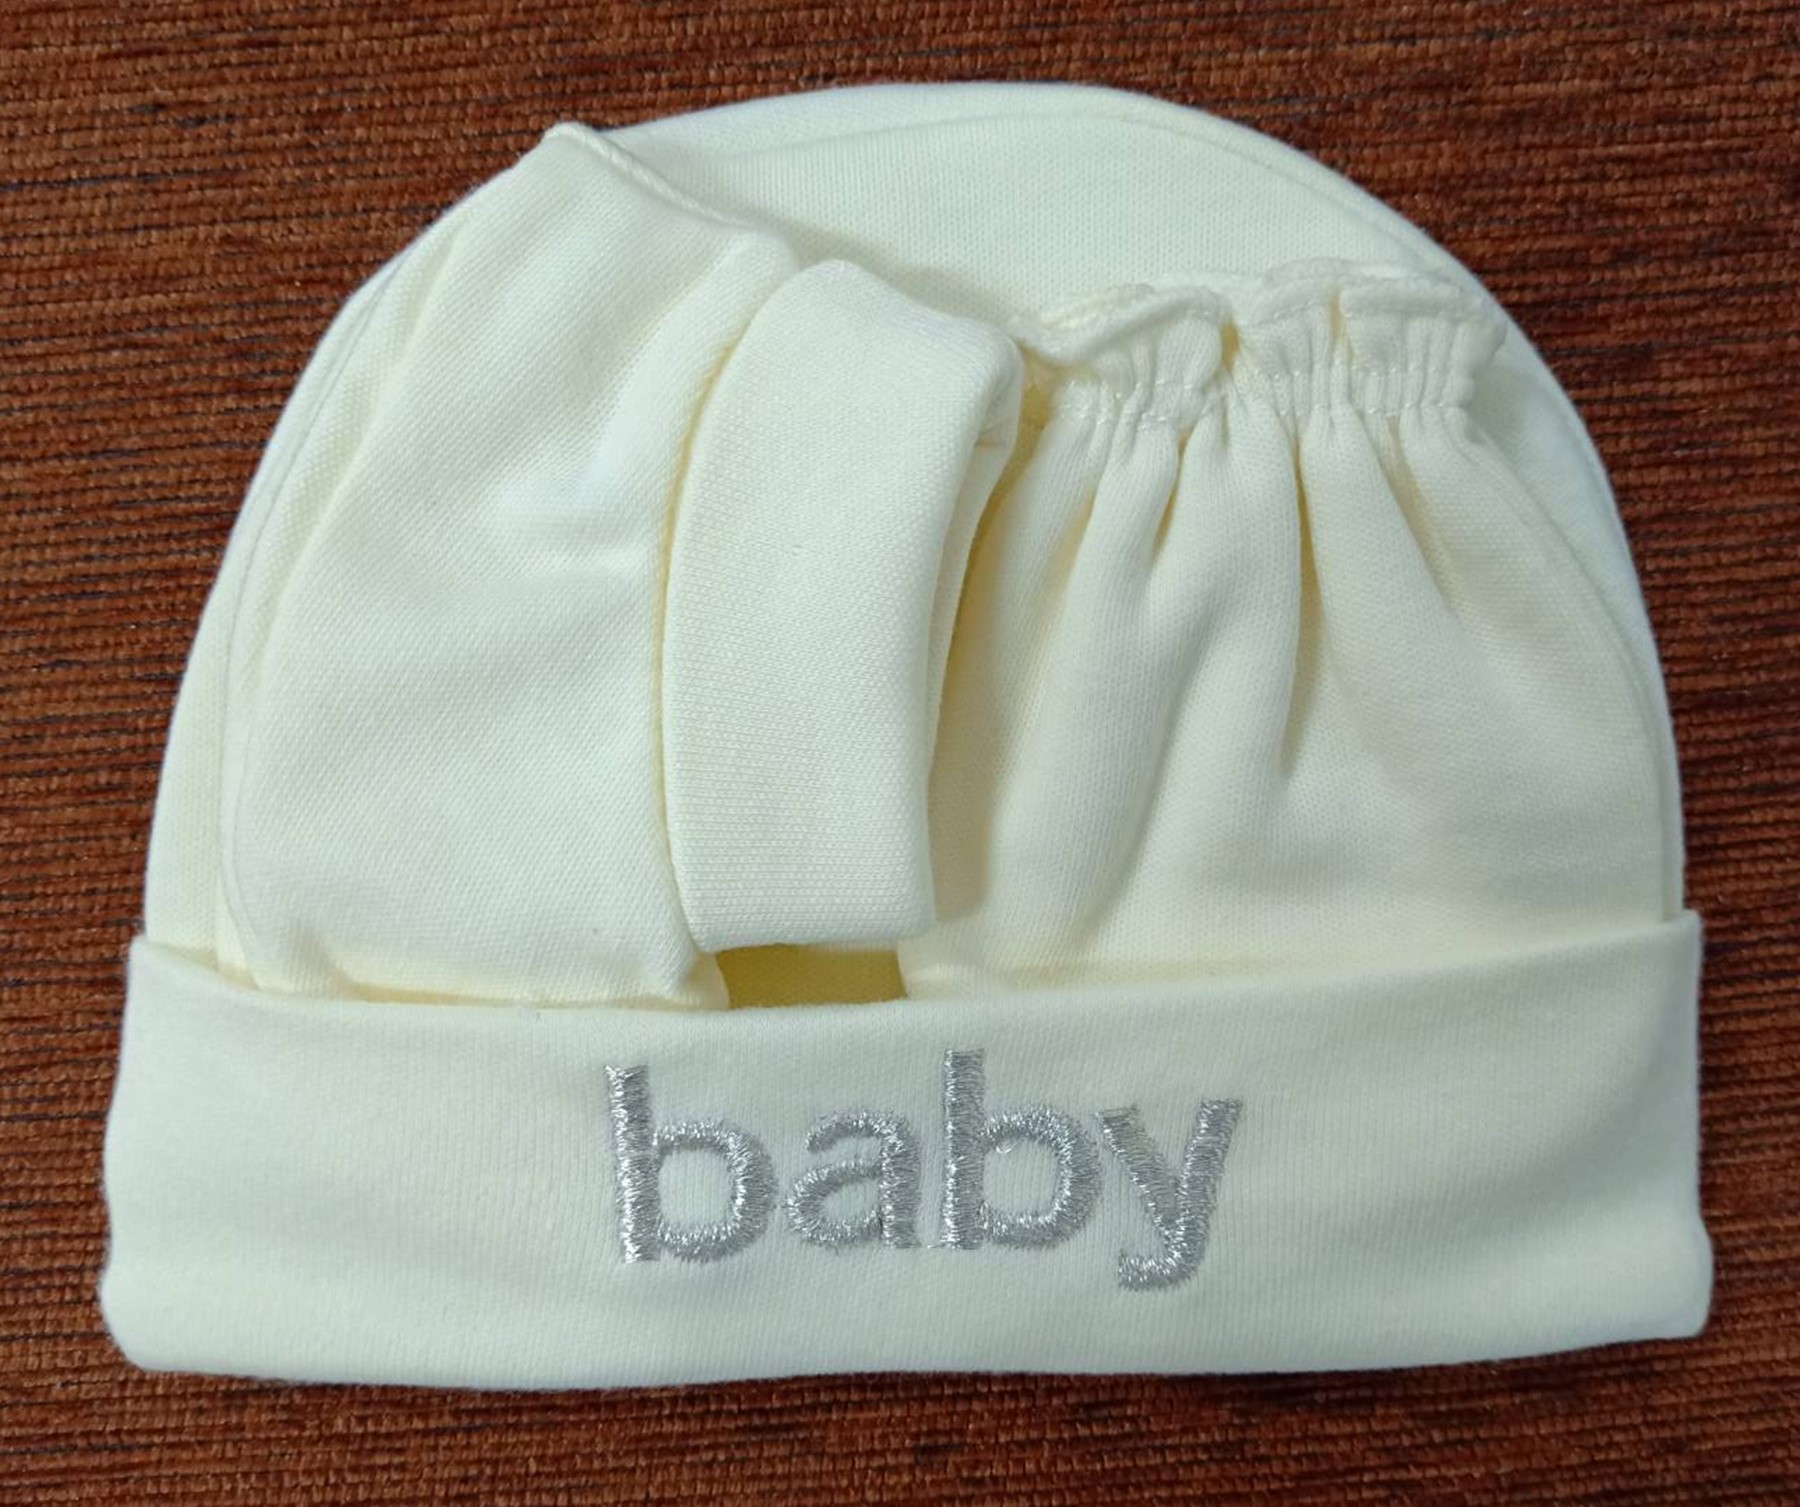 ชุดของขวัญ ชุดเซ็ทสำหรับทารก หมวก+ถุงมือ+ถุงเท้าเด็กอ่อน เด็กแรกเกิด - 3 เดือน แพ็ค 1  สีวัสดุ เหลืองอ่อนอายุขั้นต่ำที่แนะนำ ทารกแรกเกิดอายุสูงสุดที่แนะนำถึง 0-3 เดือน